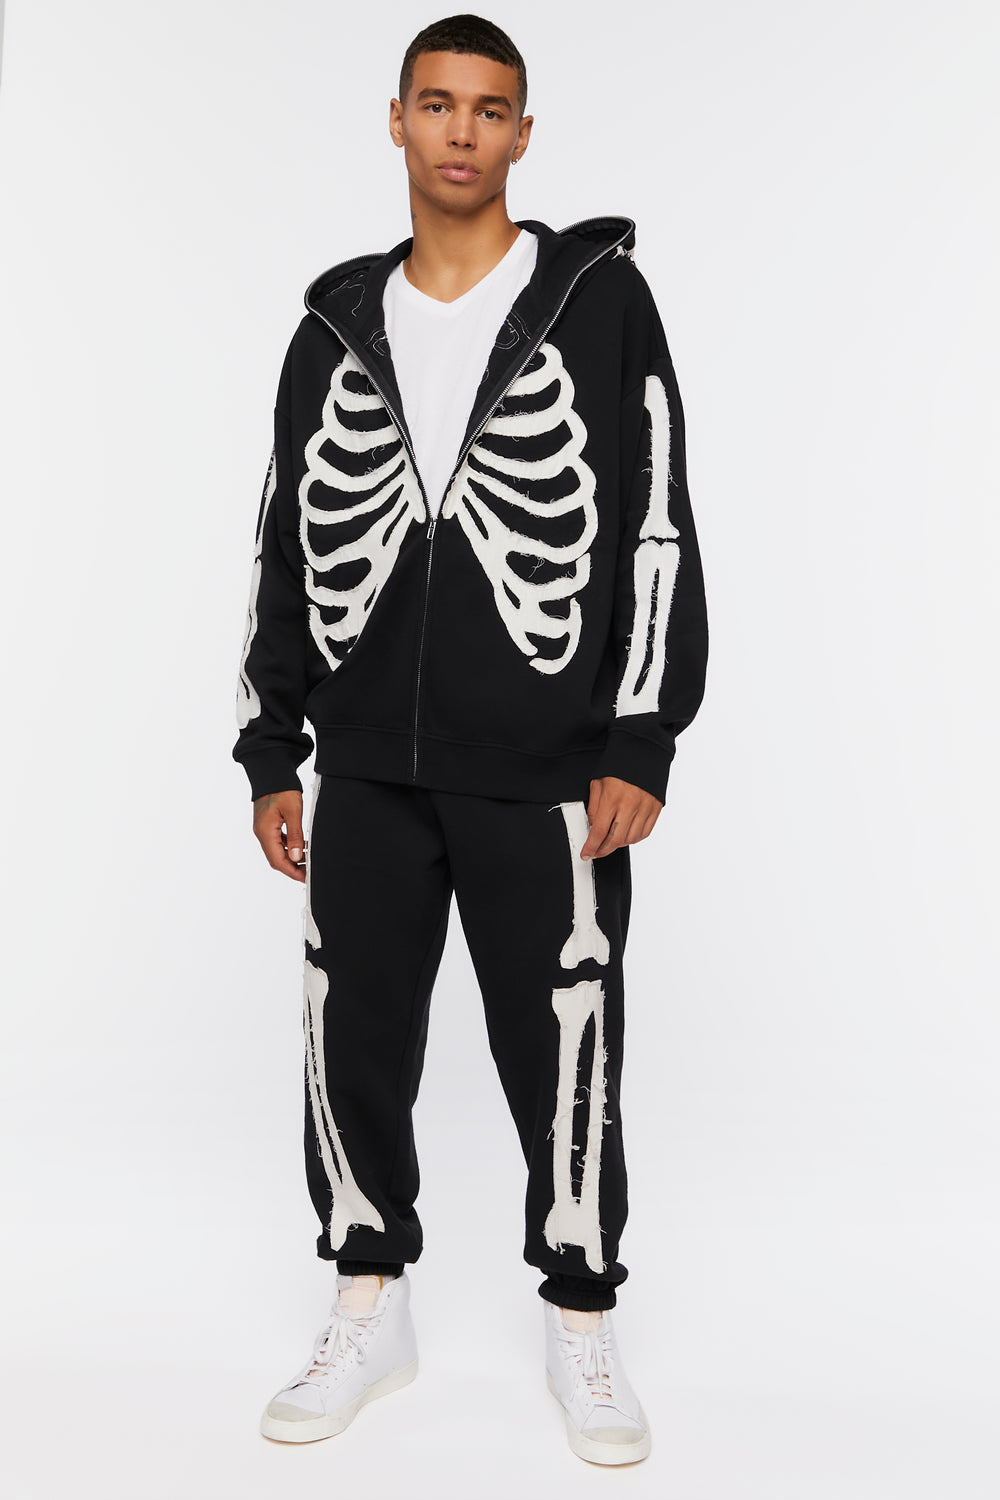 Skeleton Print Joggers Black